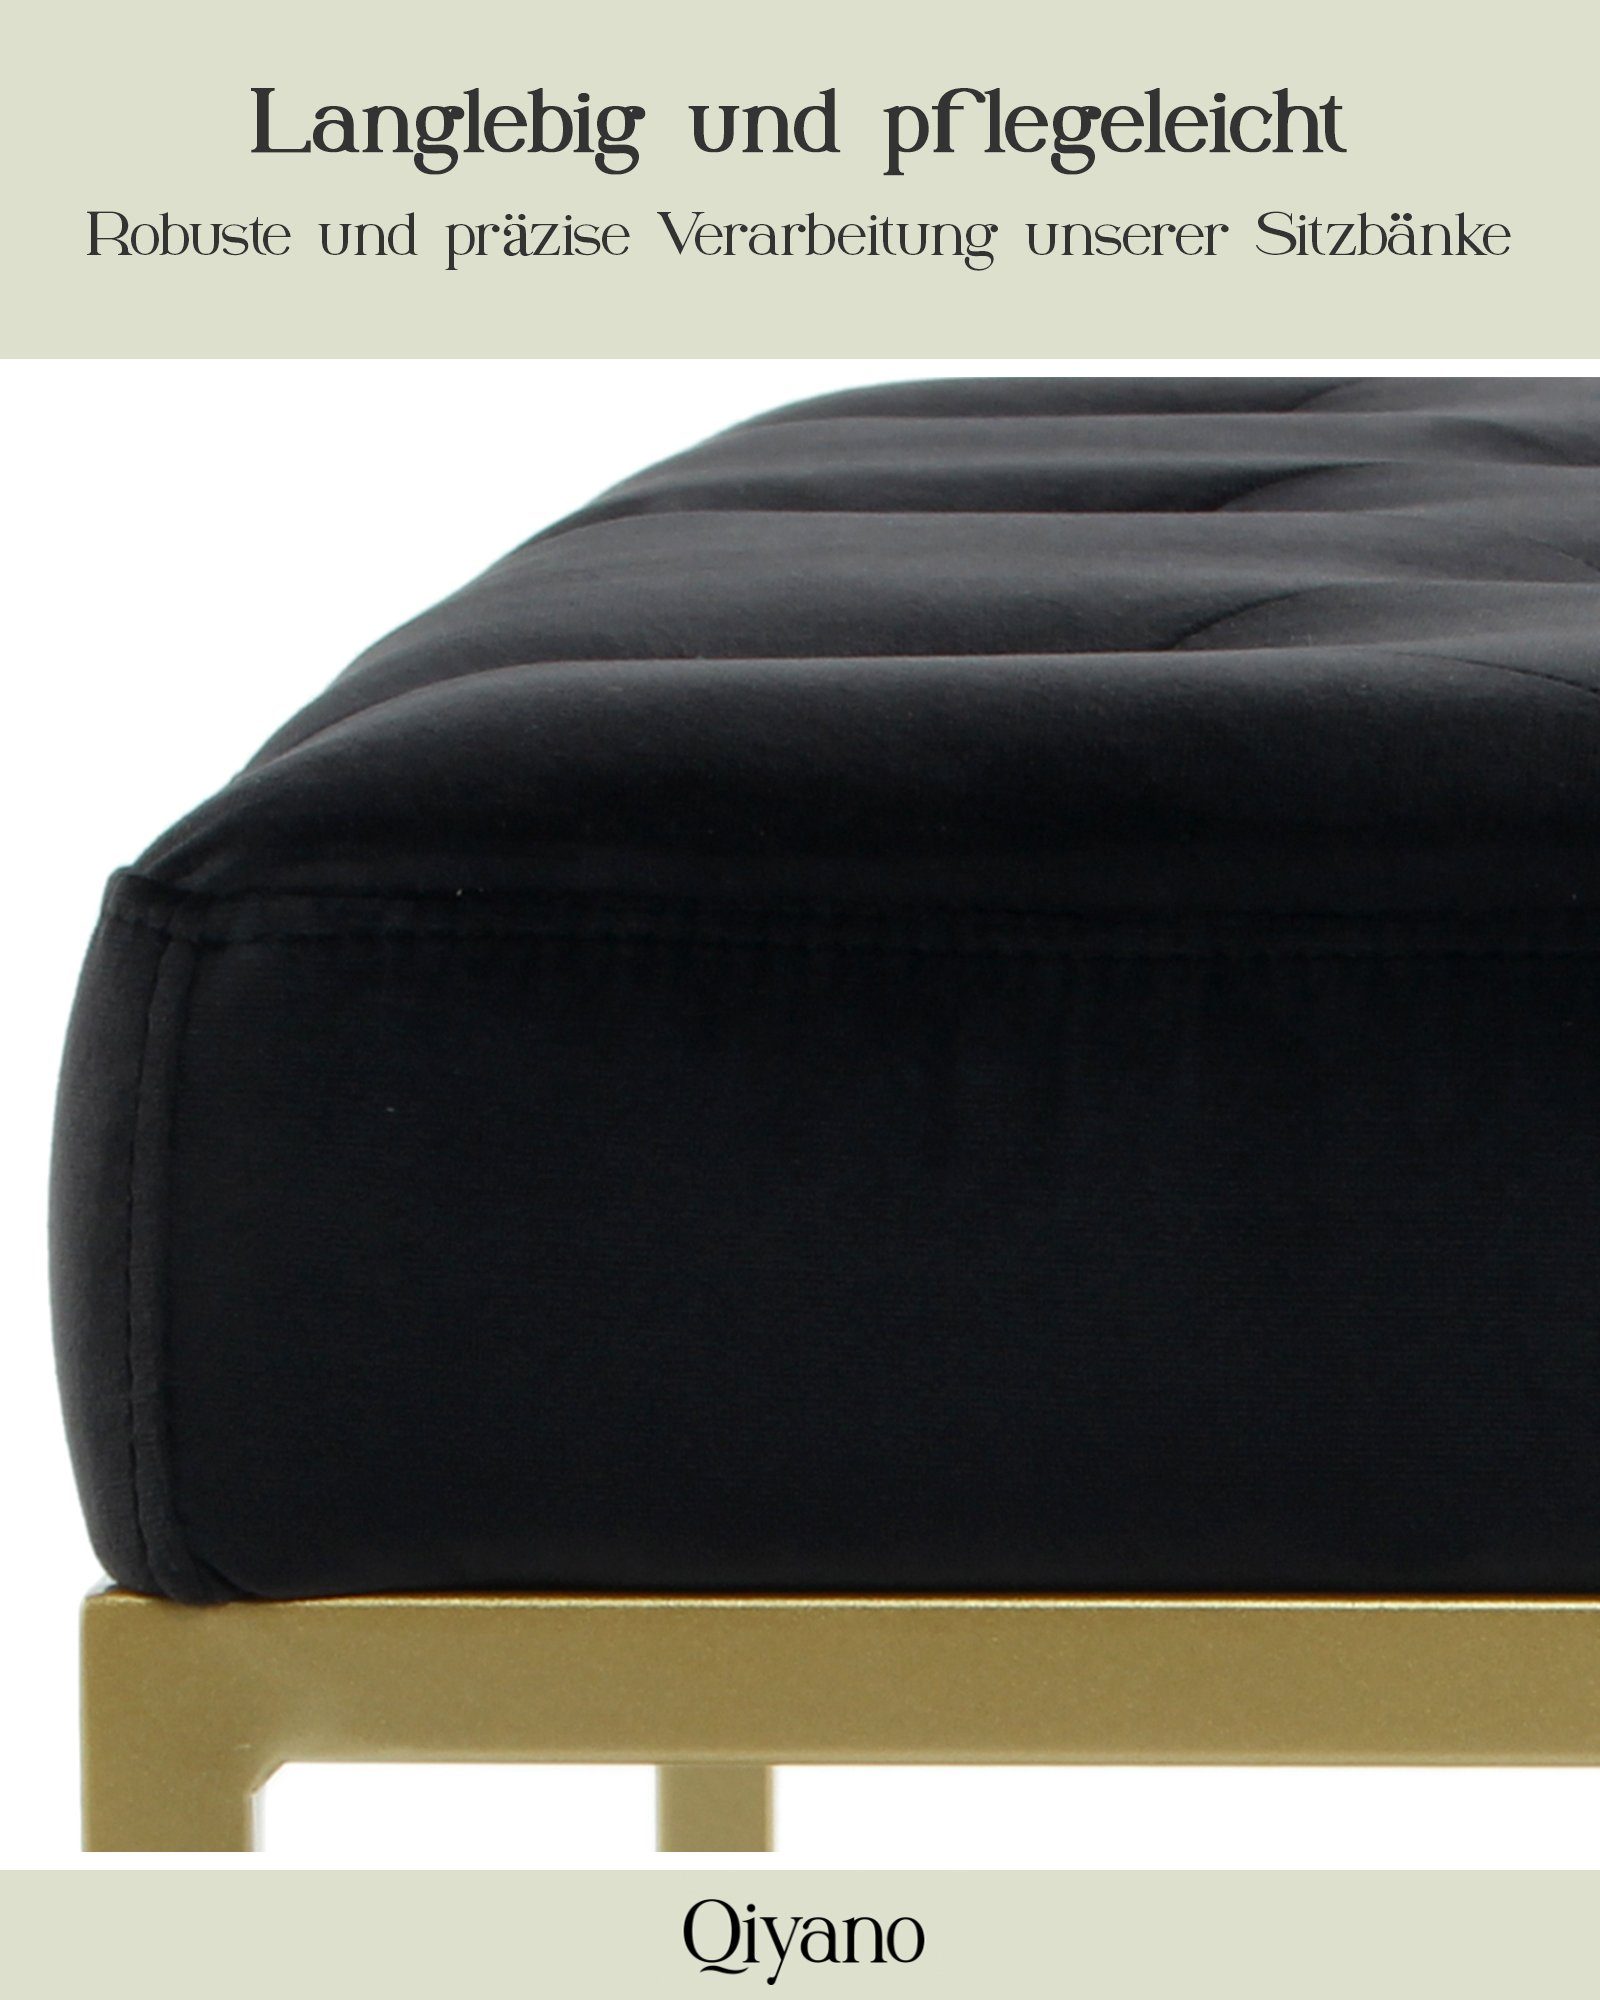 Barock-Stil Gesteppte Schwarz mit Sitz- goldenen Metallfüßen Qiyano Samt Sitzbank Polsterbank